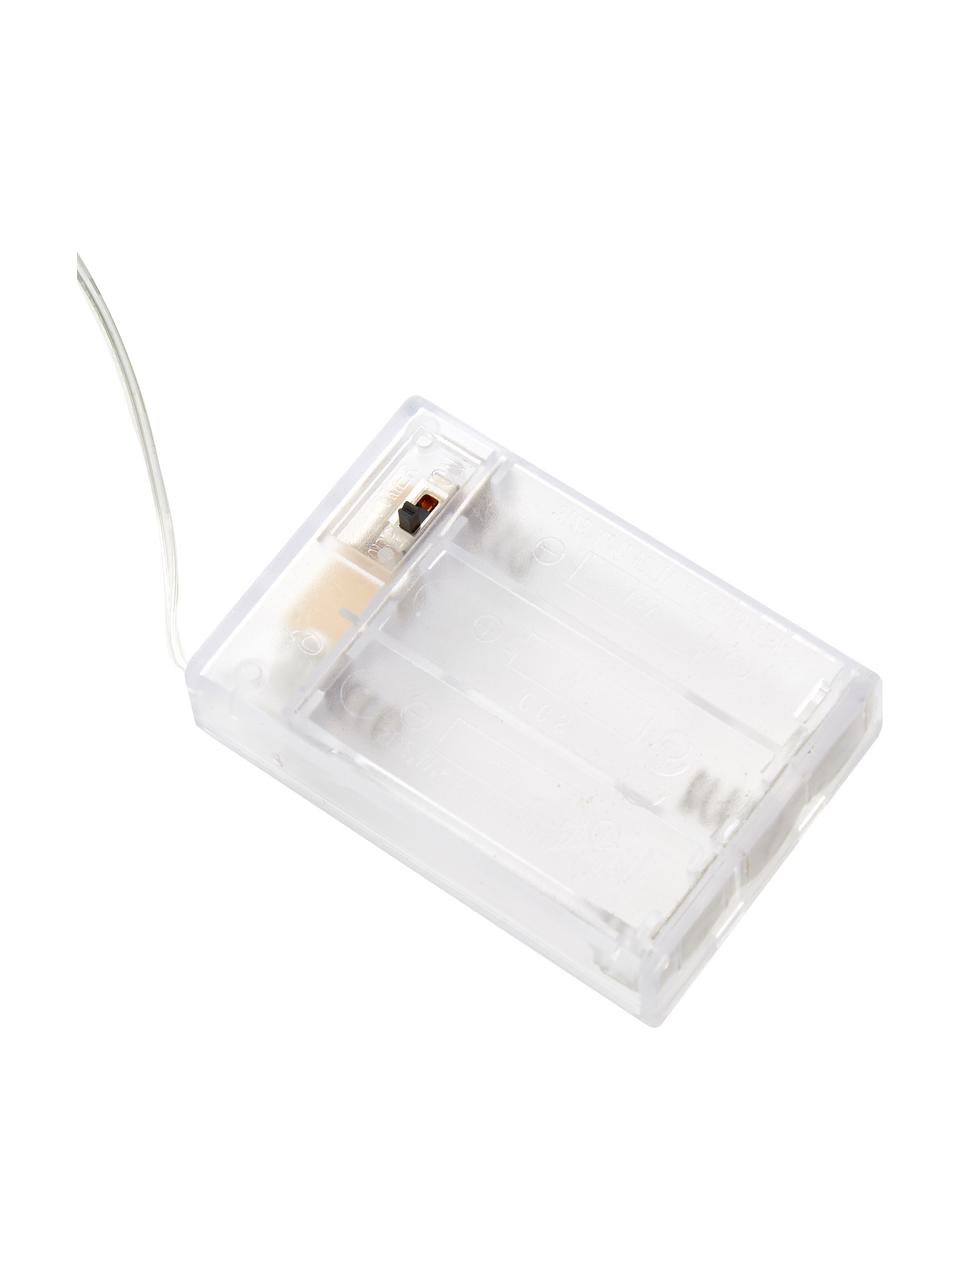 Ghirlanda a LED Wiry, bianco caldo, Plastica, Trasparente, Lung. 195 cm